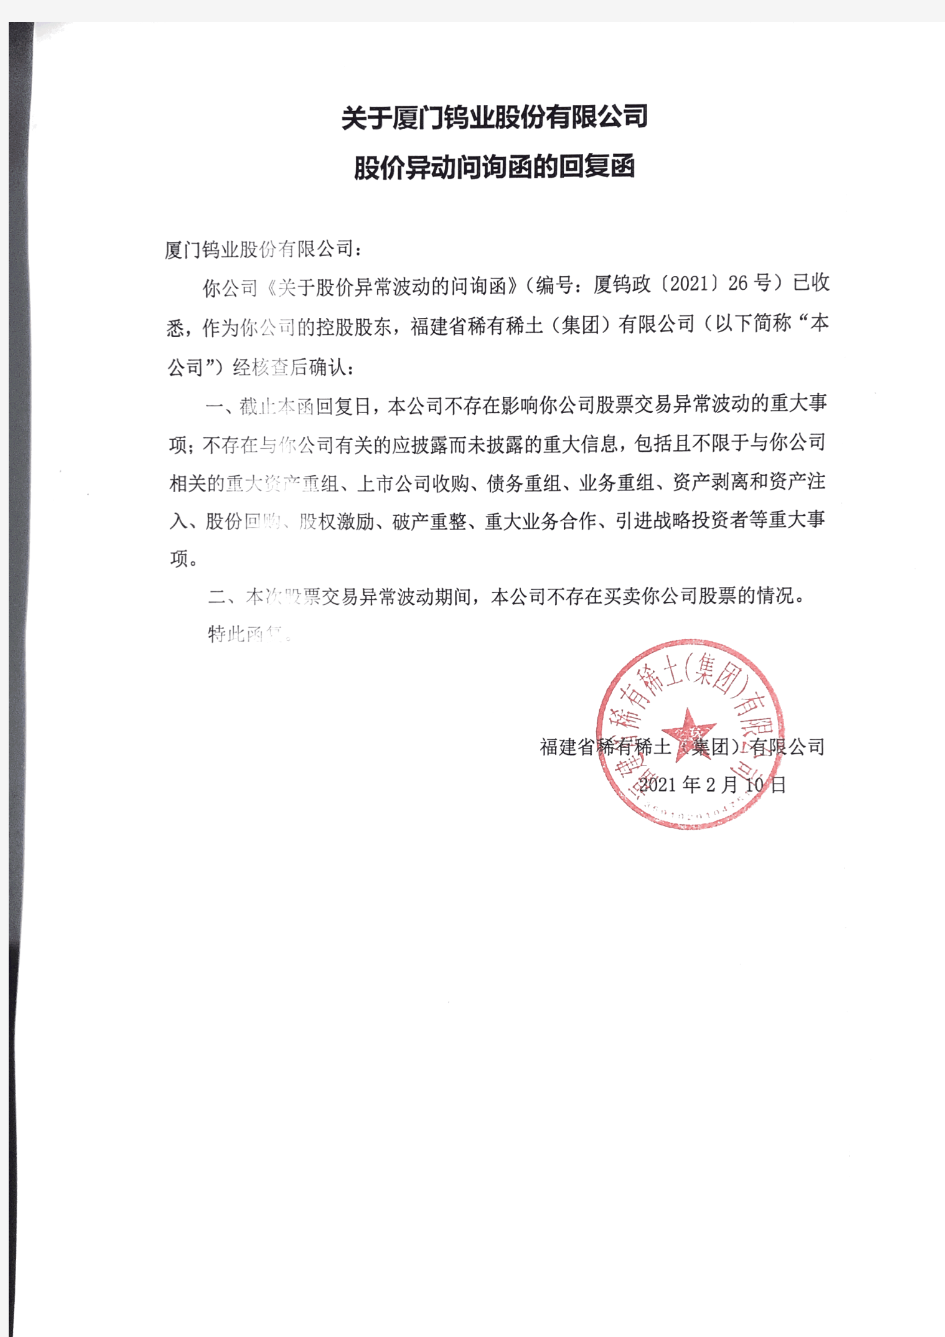 600549福建省稀有稀土(集团)有限公司关于厦门钨业股价异动询问函的2021-02-18